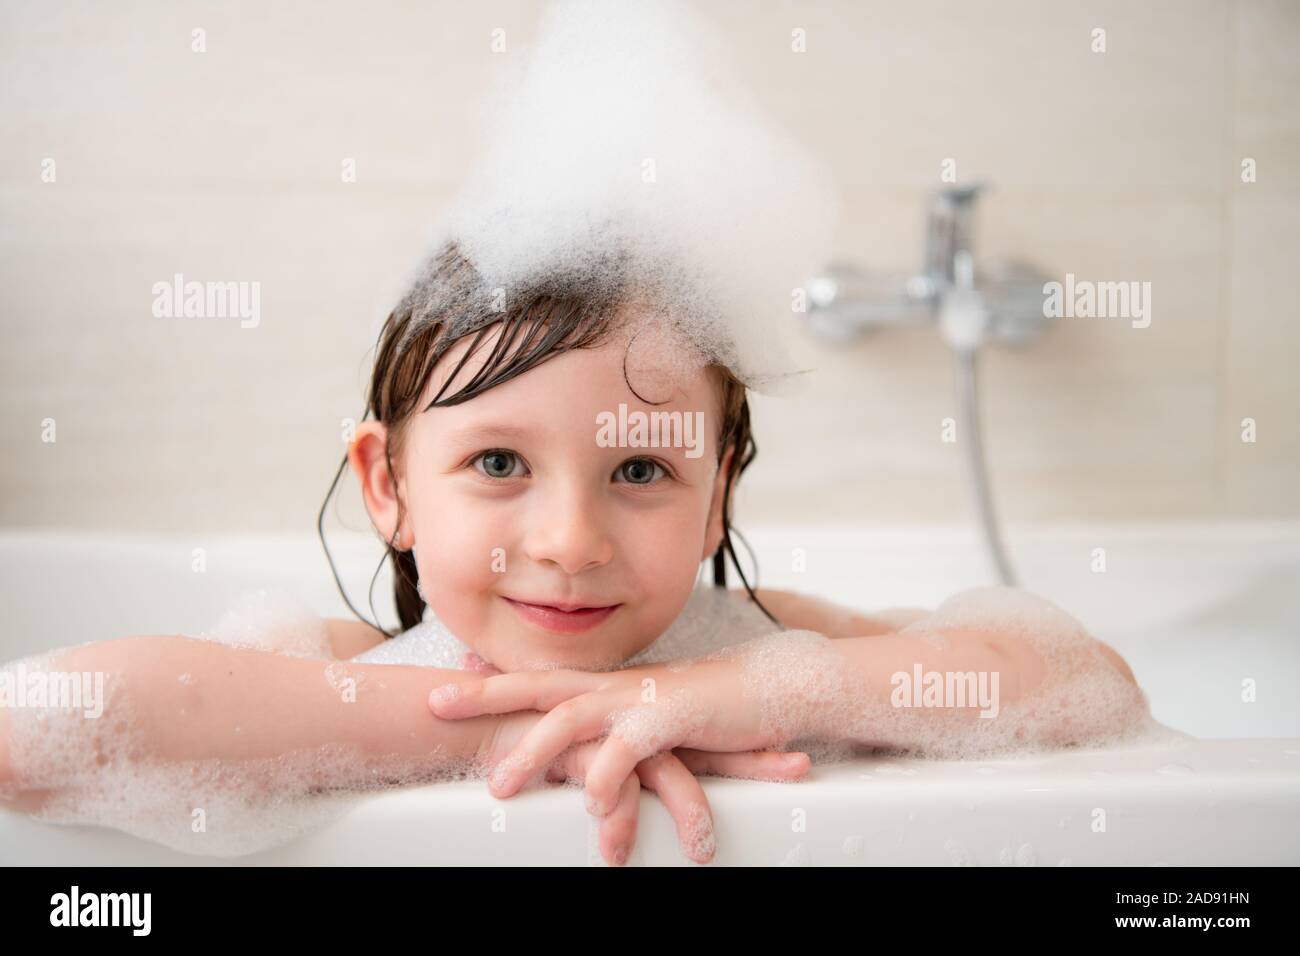 Kleines Mädchen In Der Badewanne Mit Schaum Stockfotografie Alamy